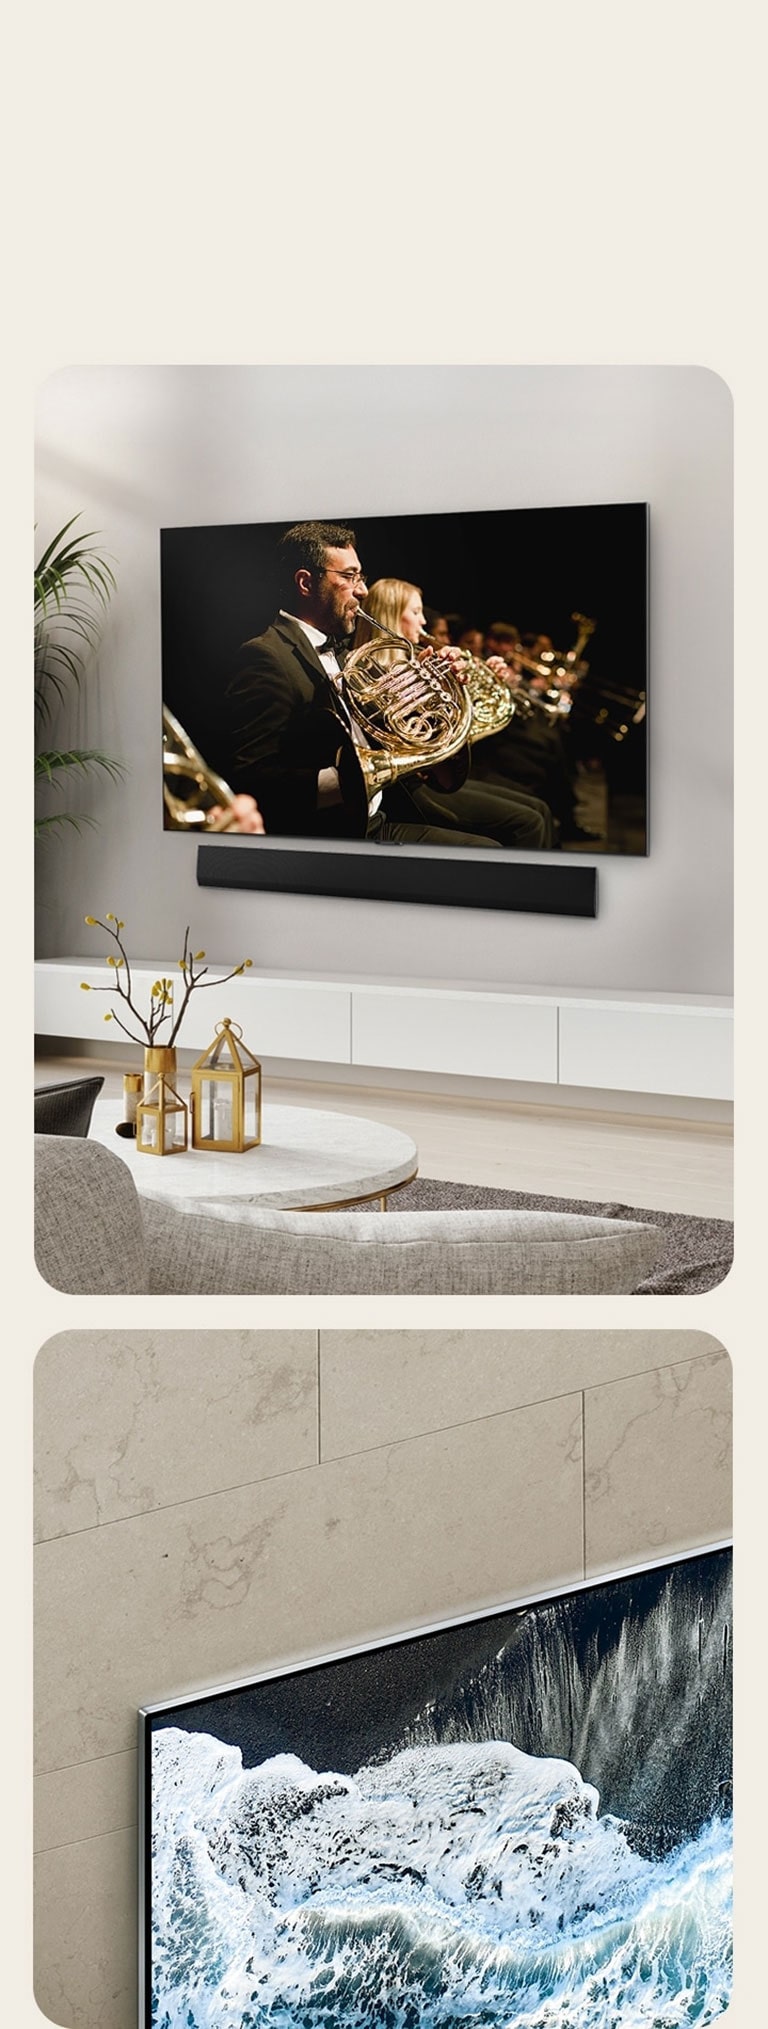 "Visão angular da LG OLED G4 contra uma parede de mármore, mostrando como ela se harmoniza com a parede.  Uma imagem da LG OLED G4 e uma LG soundbar em uma sala de estar espaçosa, instalada na parede, com a apresentação de uma orquestra sendo reproduzida na tela. "